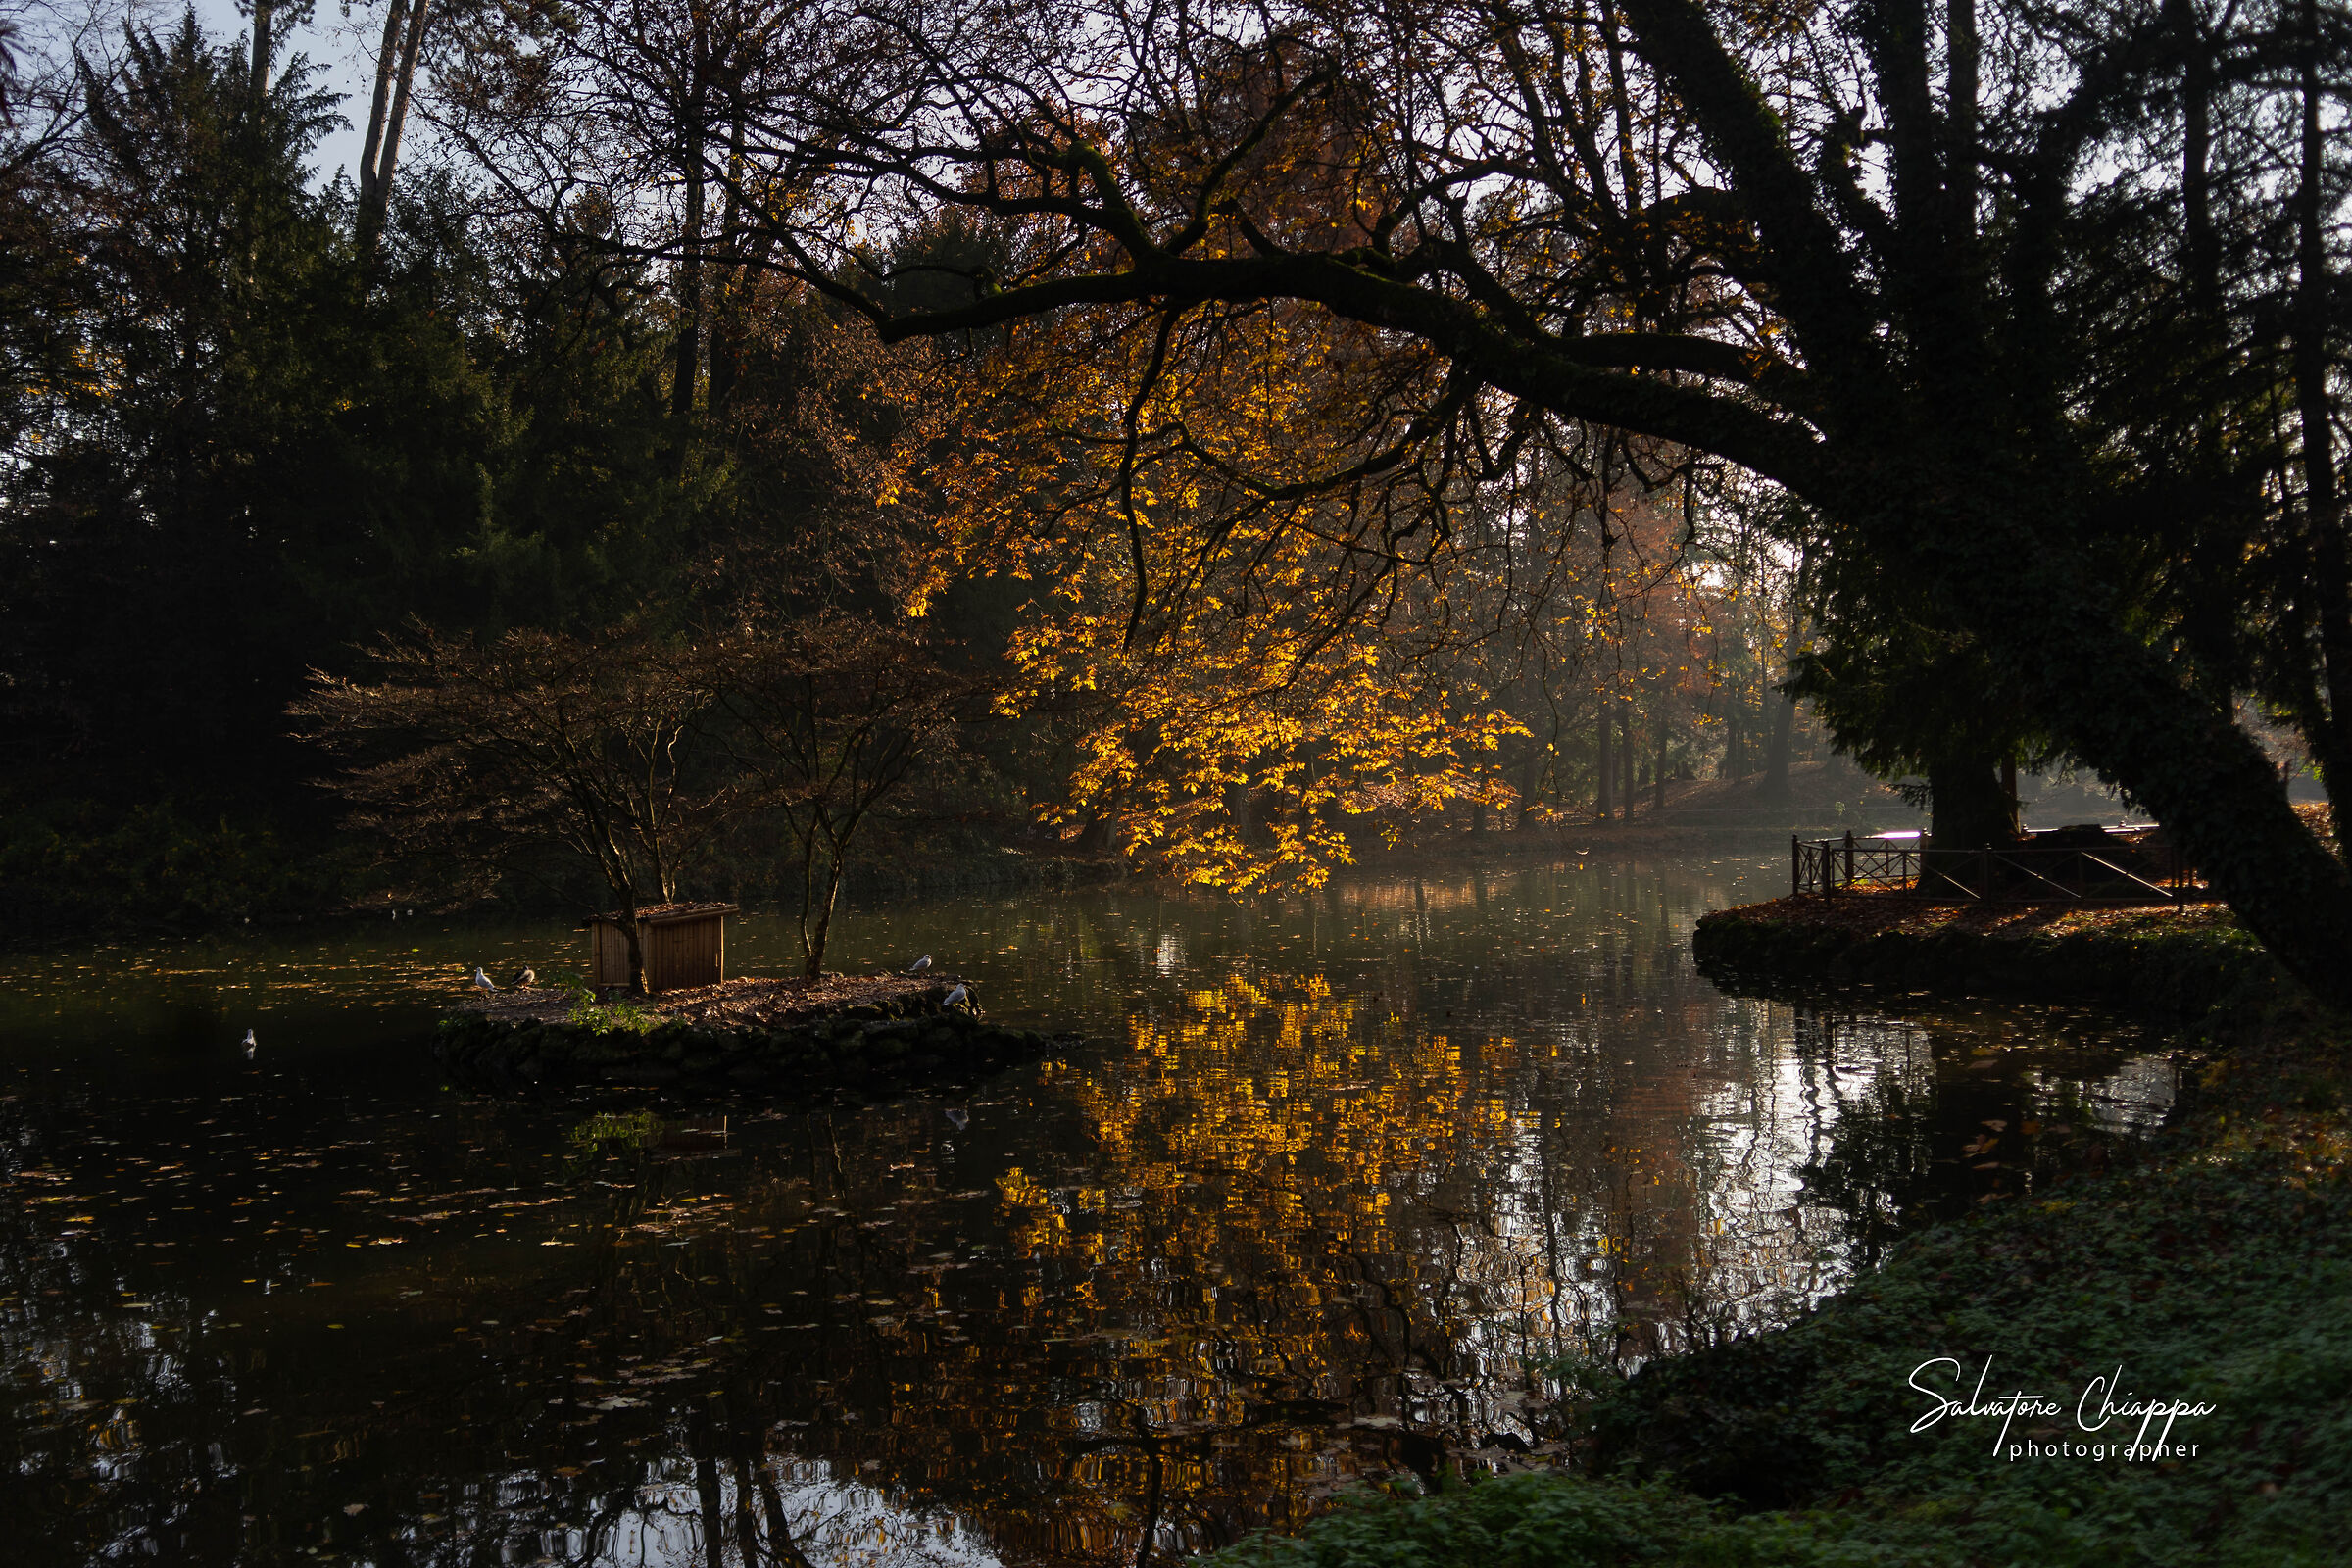 Autumn park of Monza...